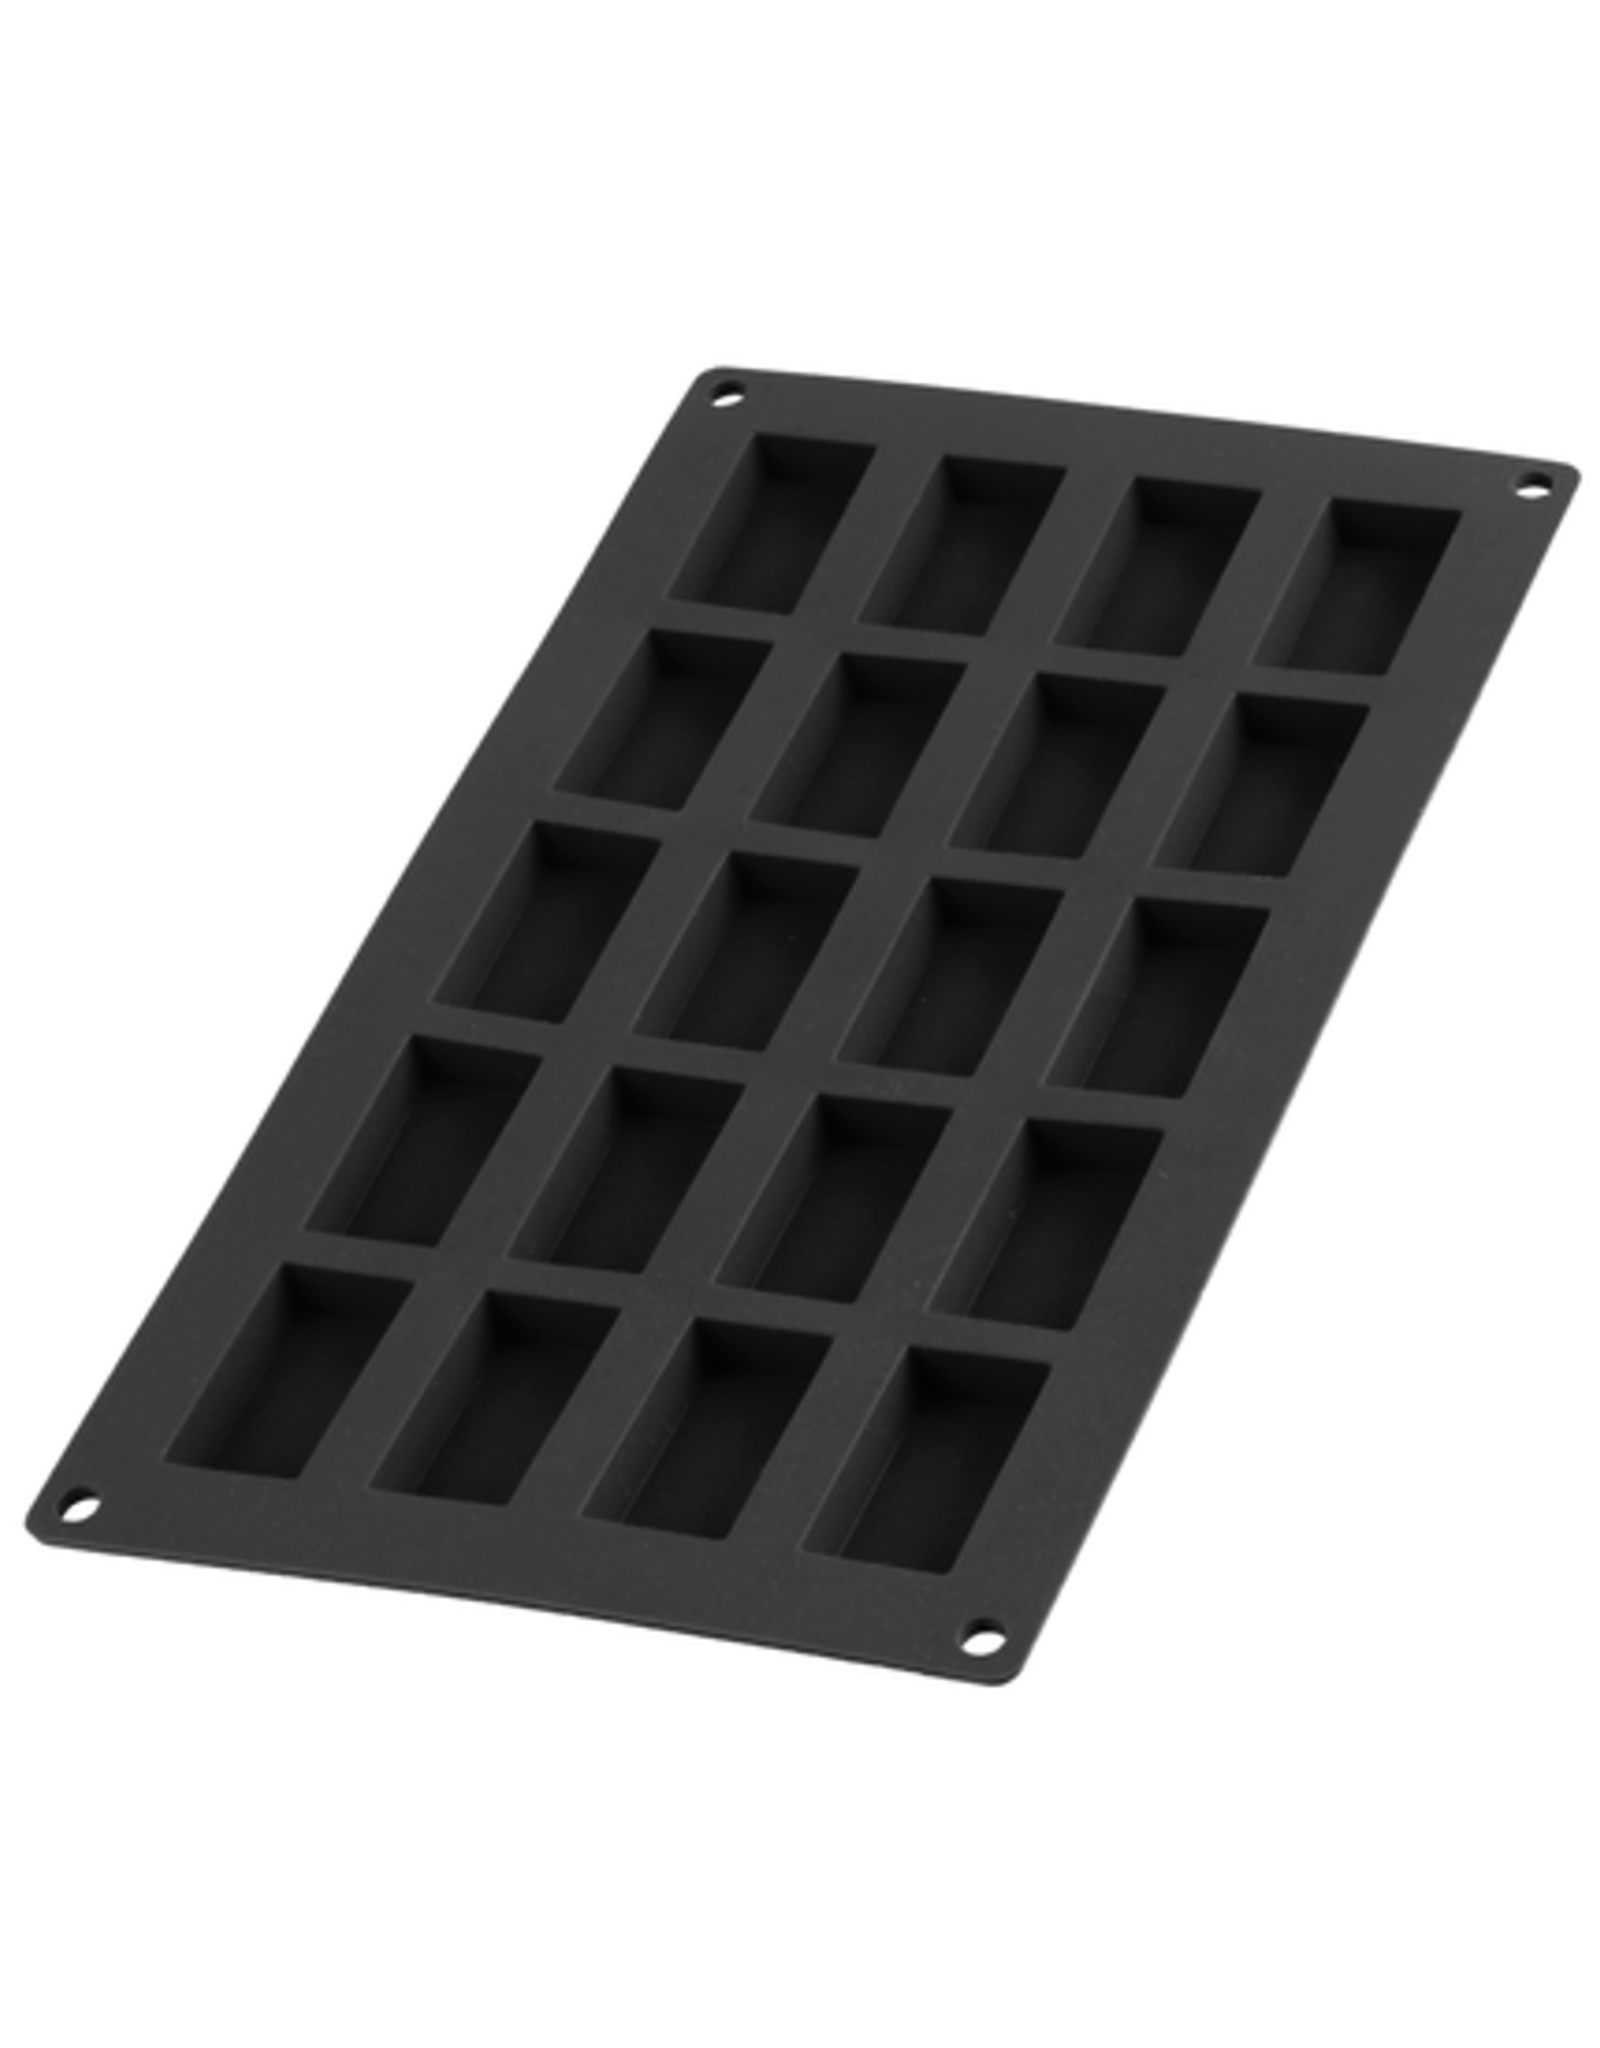 bakvorm uit silicone voor 20 financiers zwart 8.5x4.3x1.2cm - Het